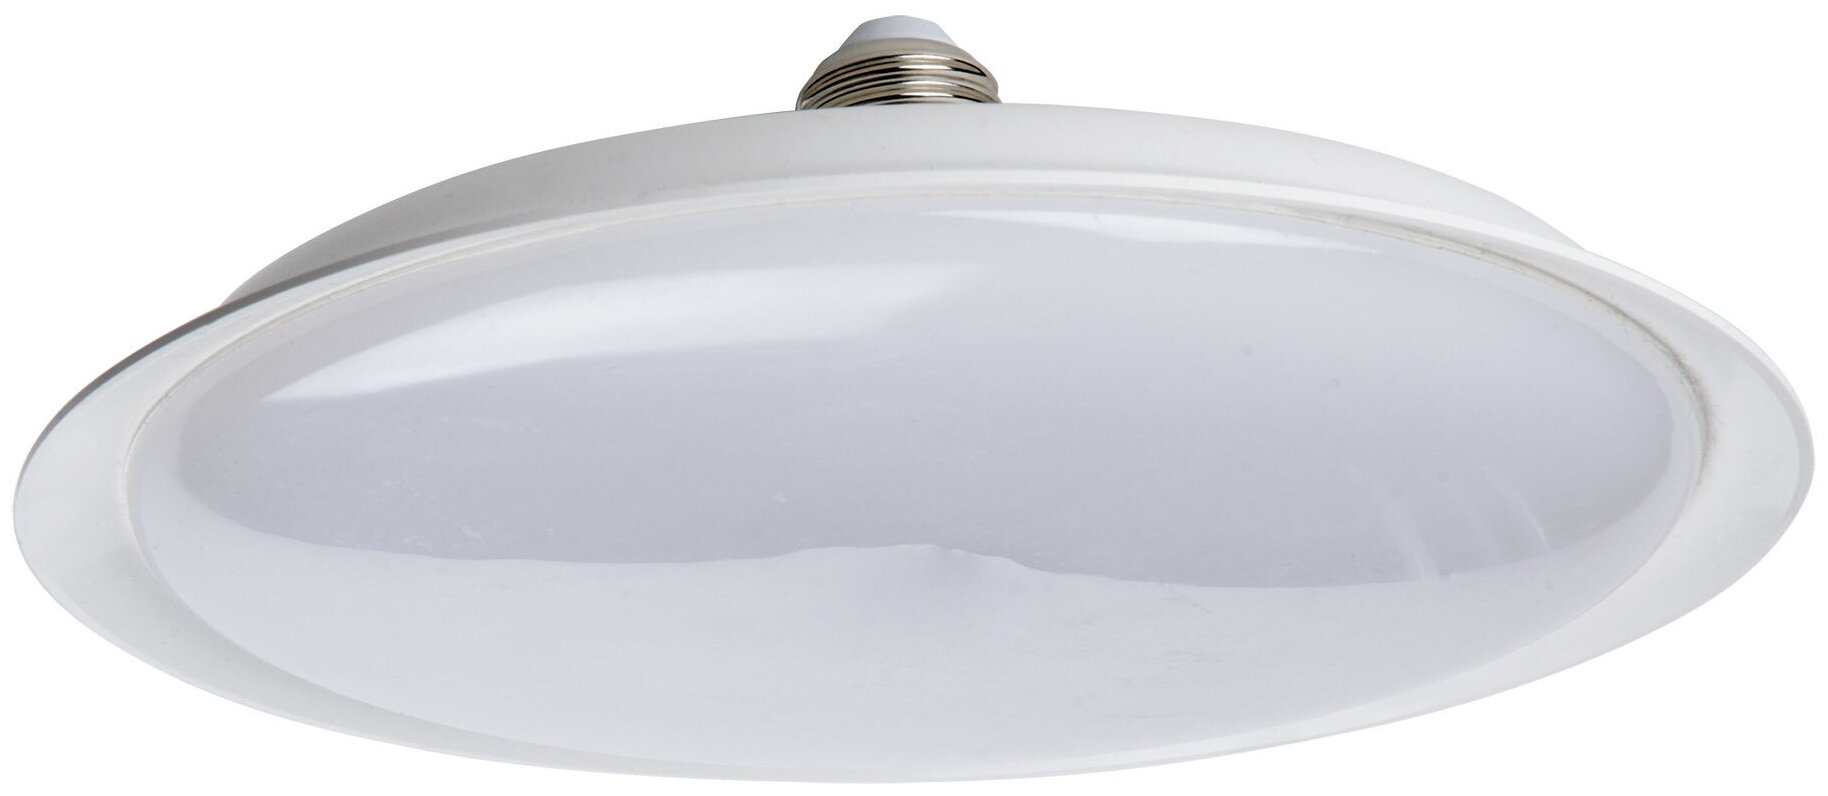 Лампа светодиодная Uniel UFO220 E27 220 В 40 Вт диск матовый 3200 лм холодный белый свет